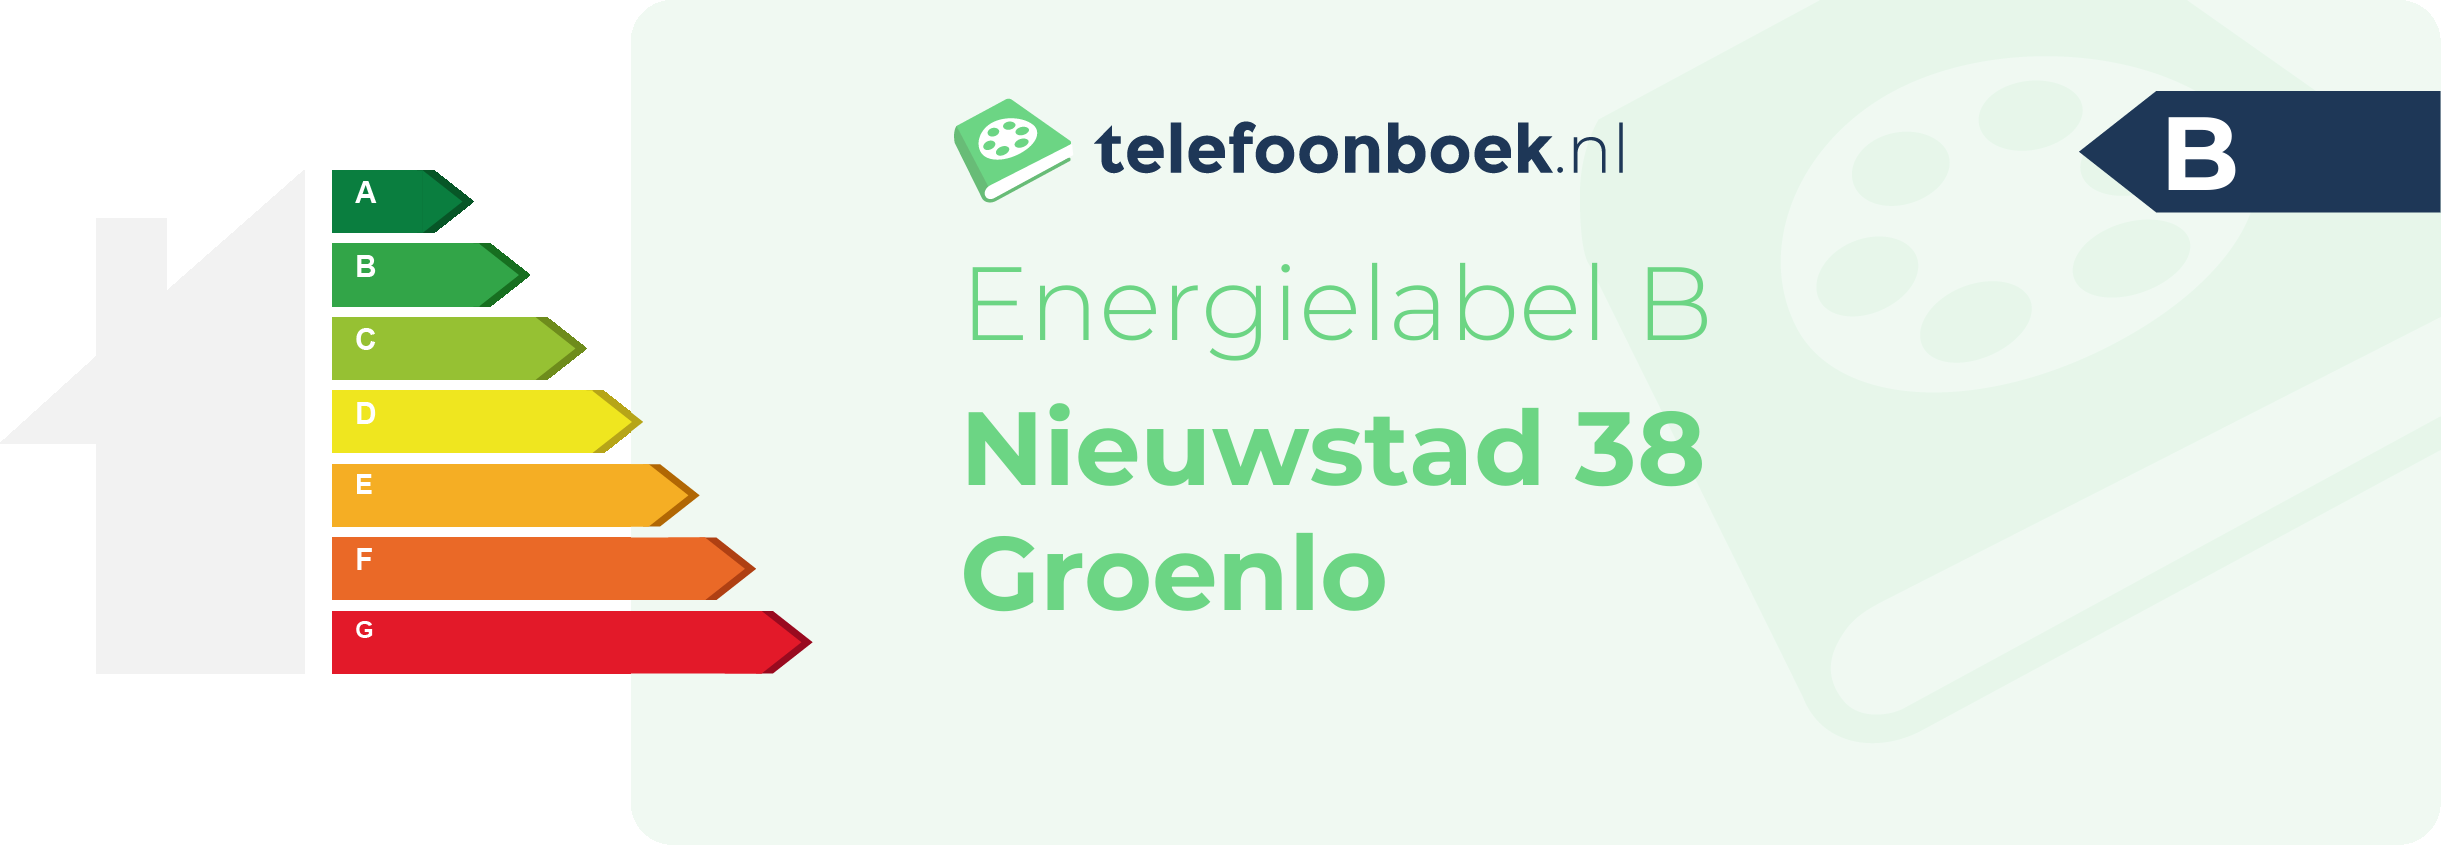 Energielabel Nieuwstad 38 Groenlo